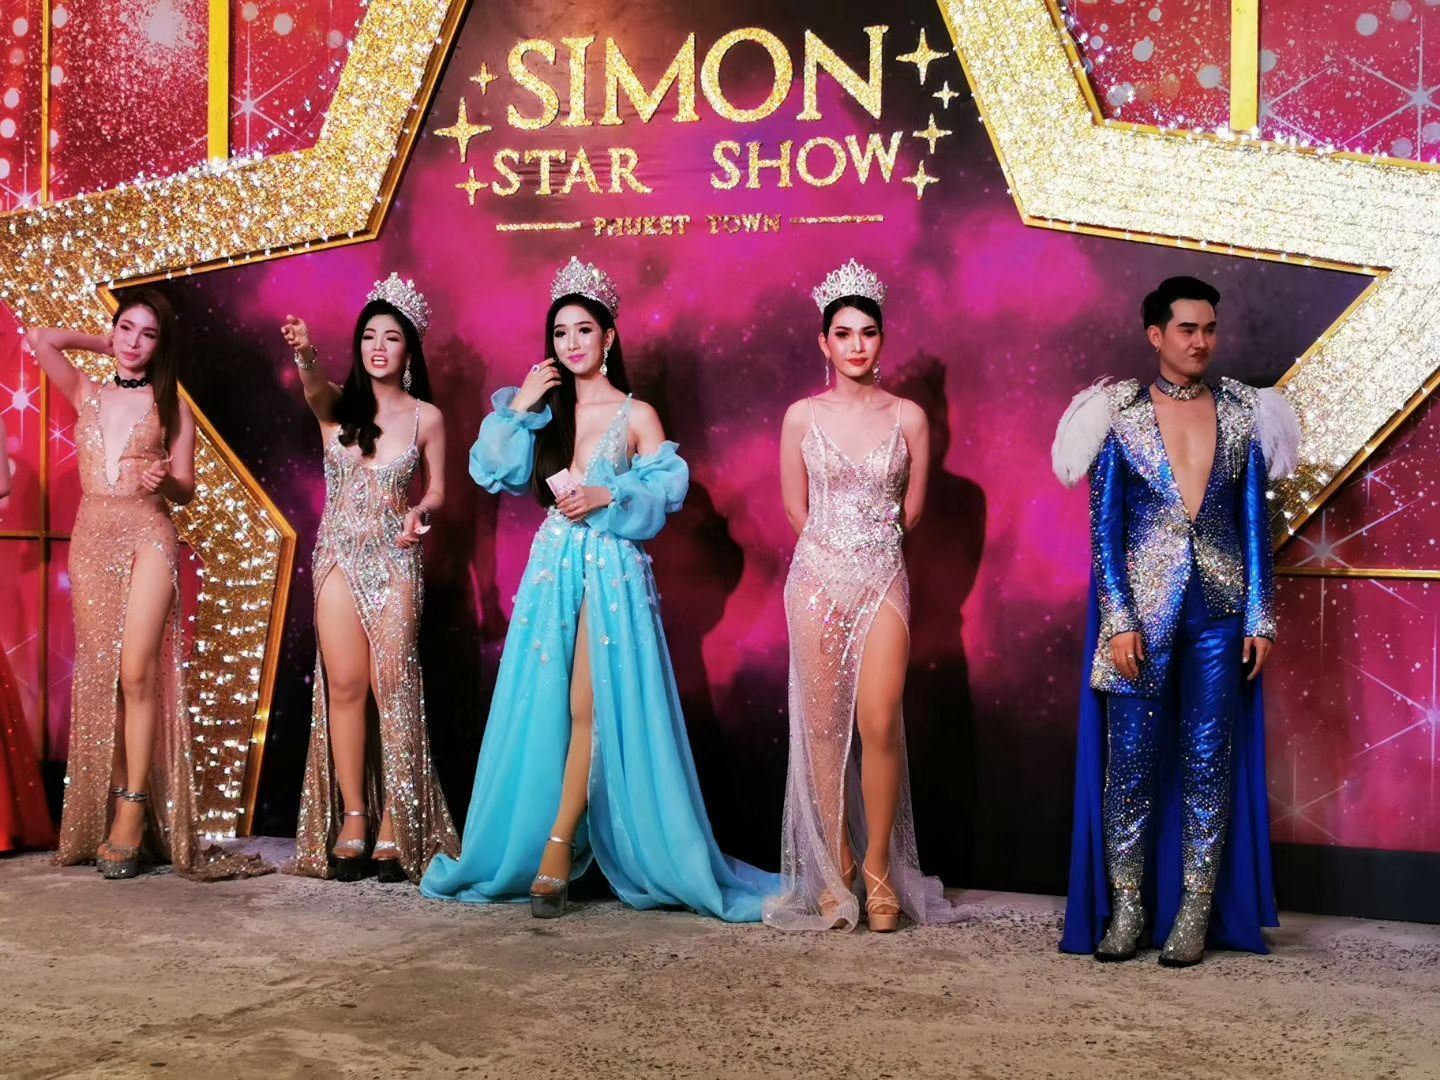 泰国曼谷 西蒙之星人妖秀 Simon Star Show